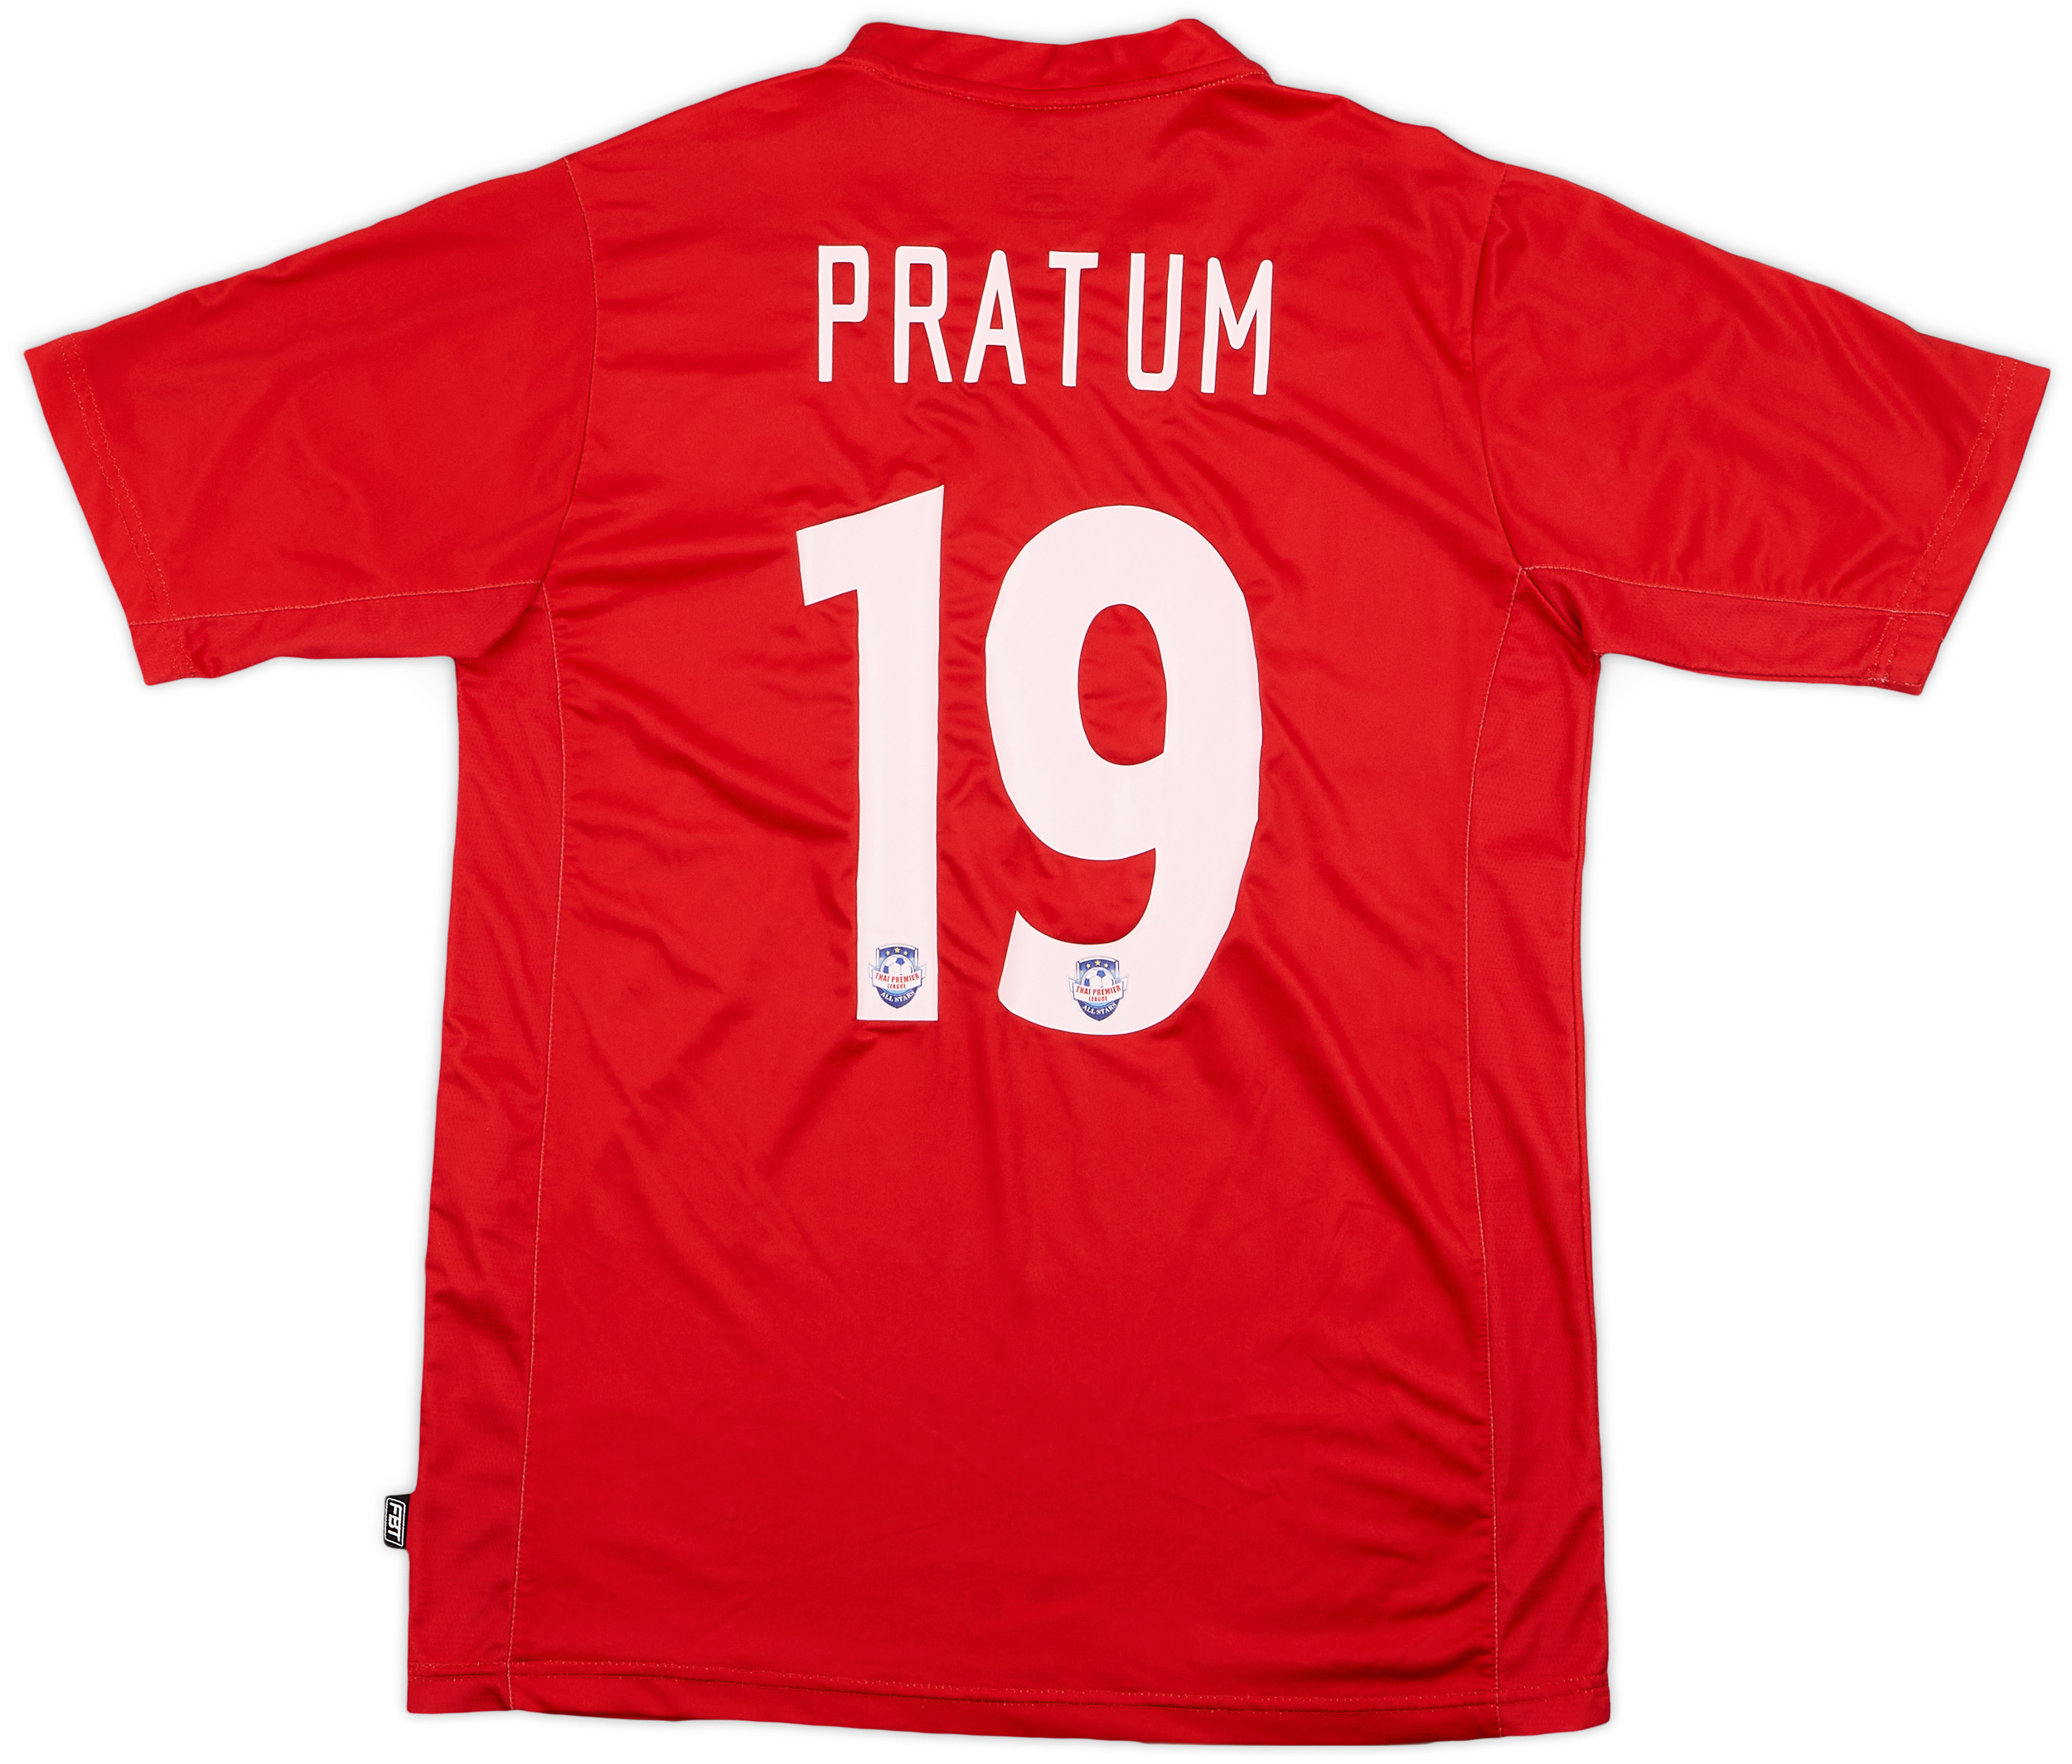 2011 Thai Premier League All Stars Home Shirt Pratum #19 - 9/10 - ()